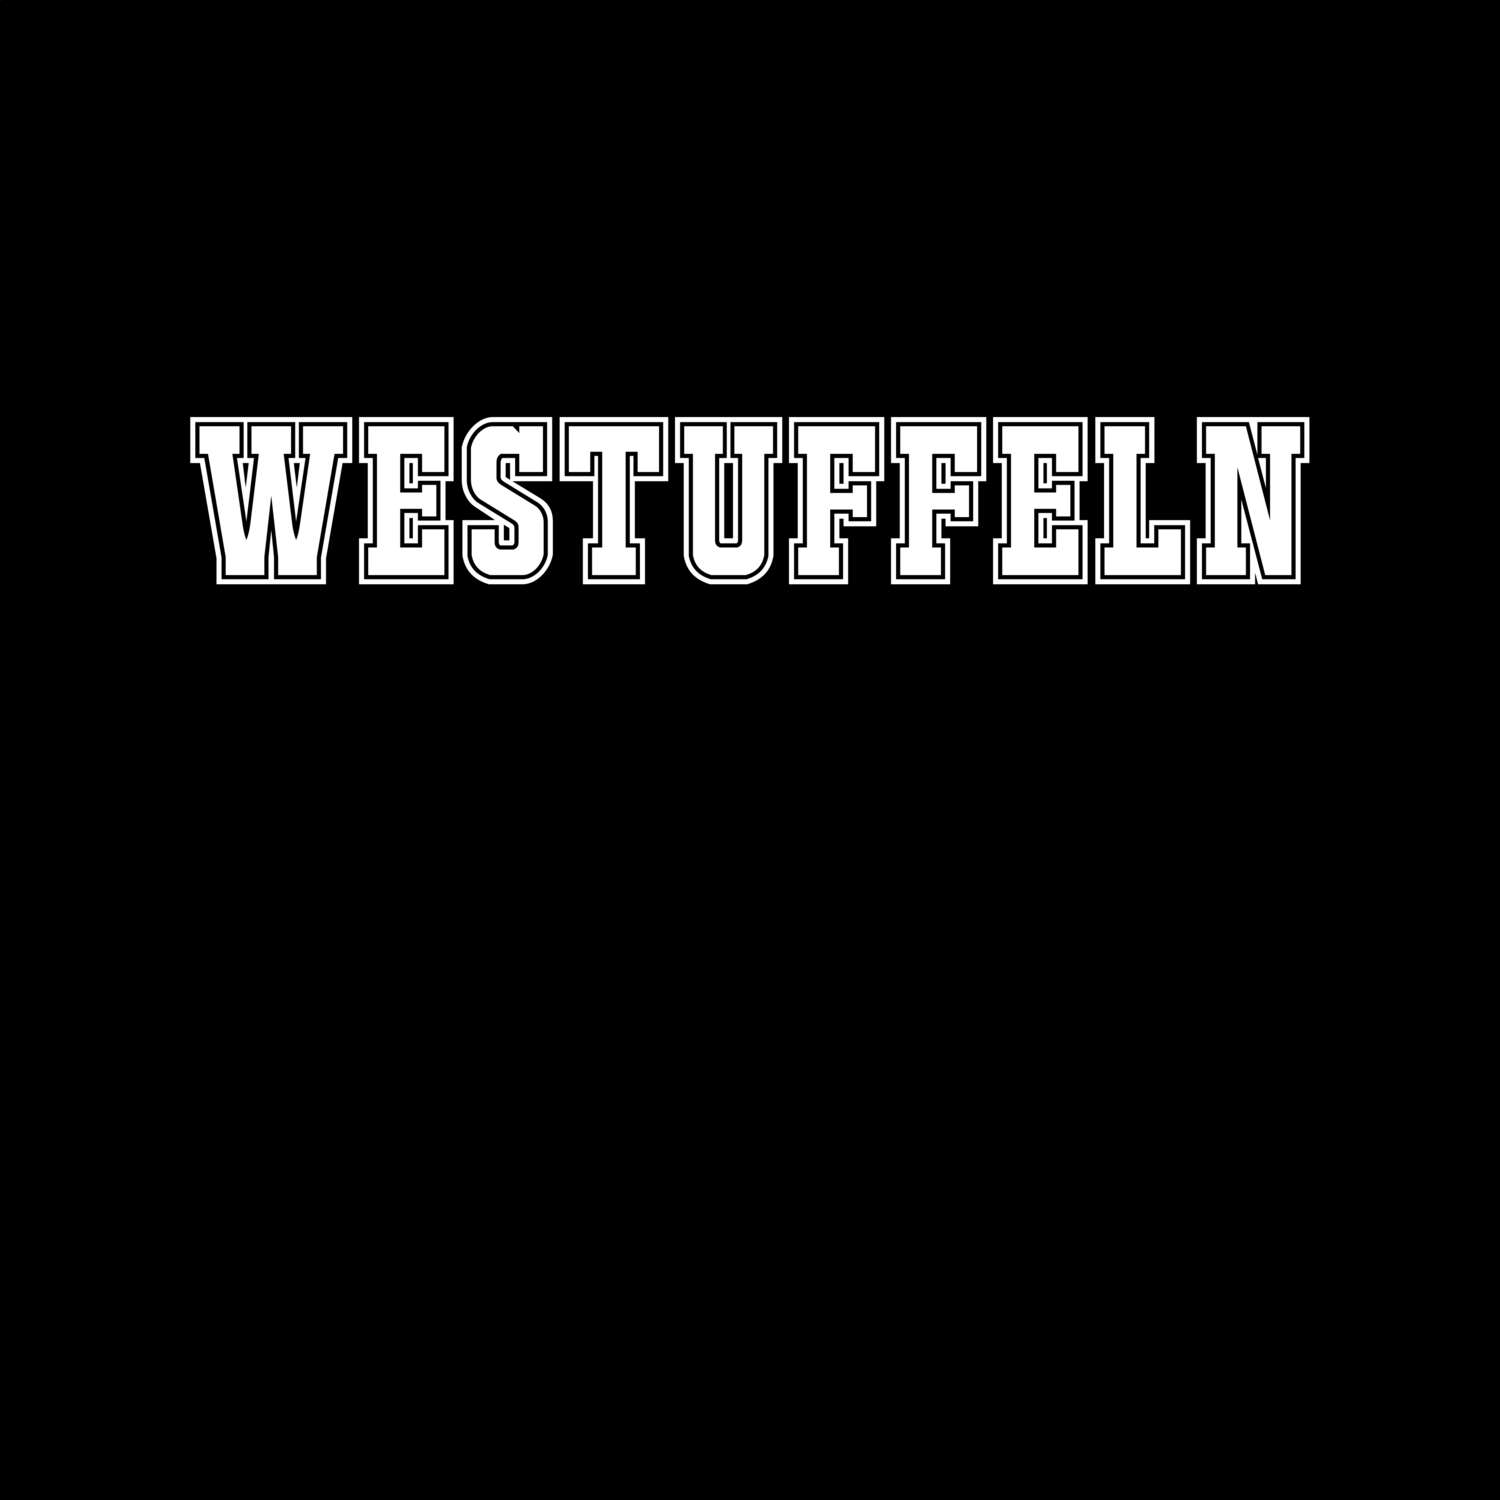 Westuffeln T-Shirt »Classic«